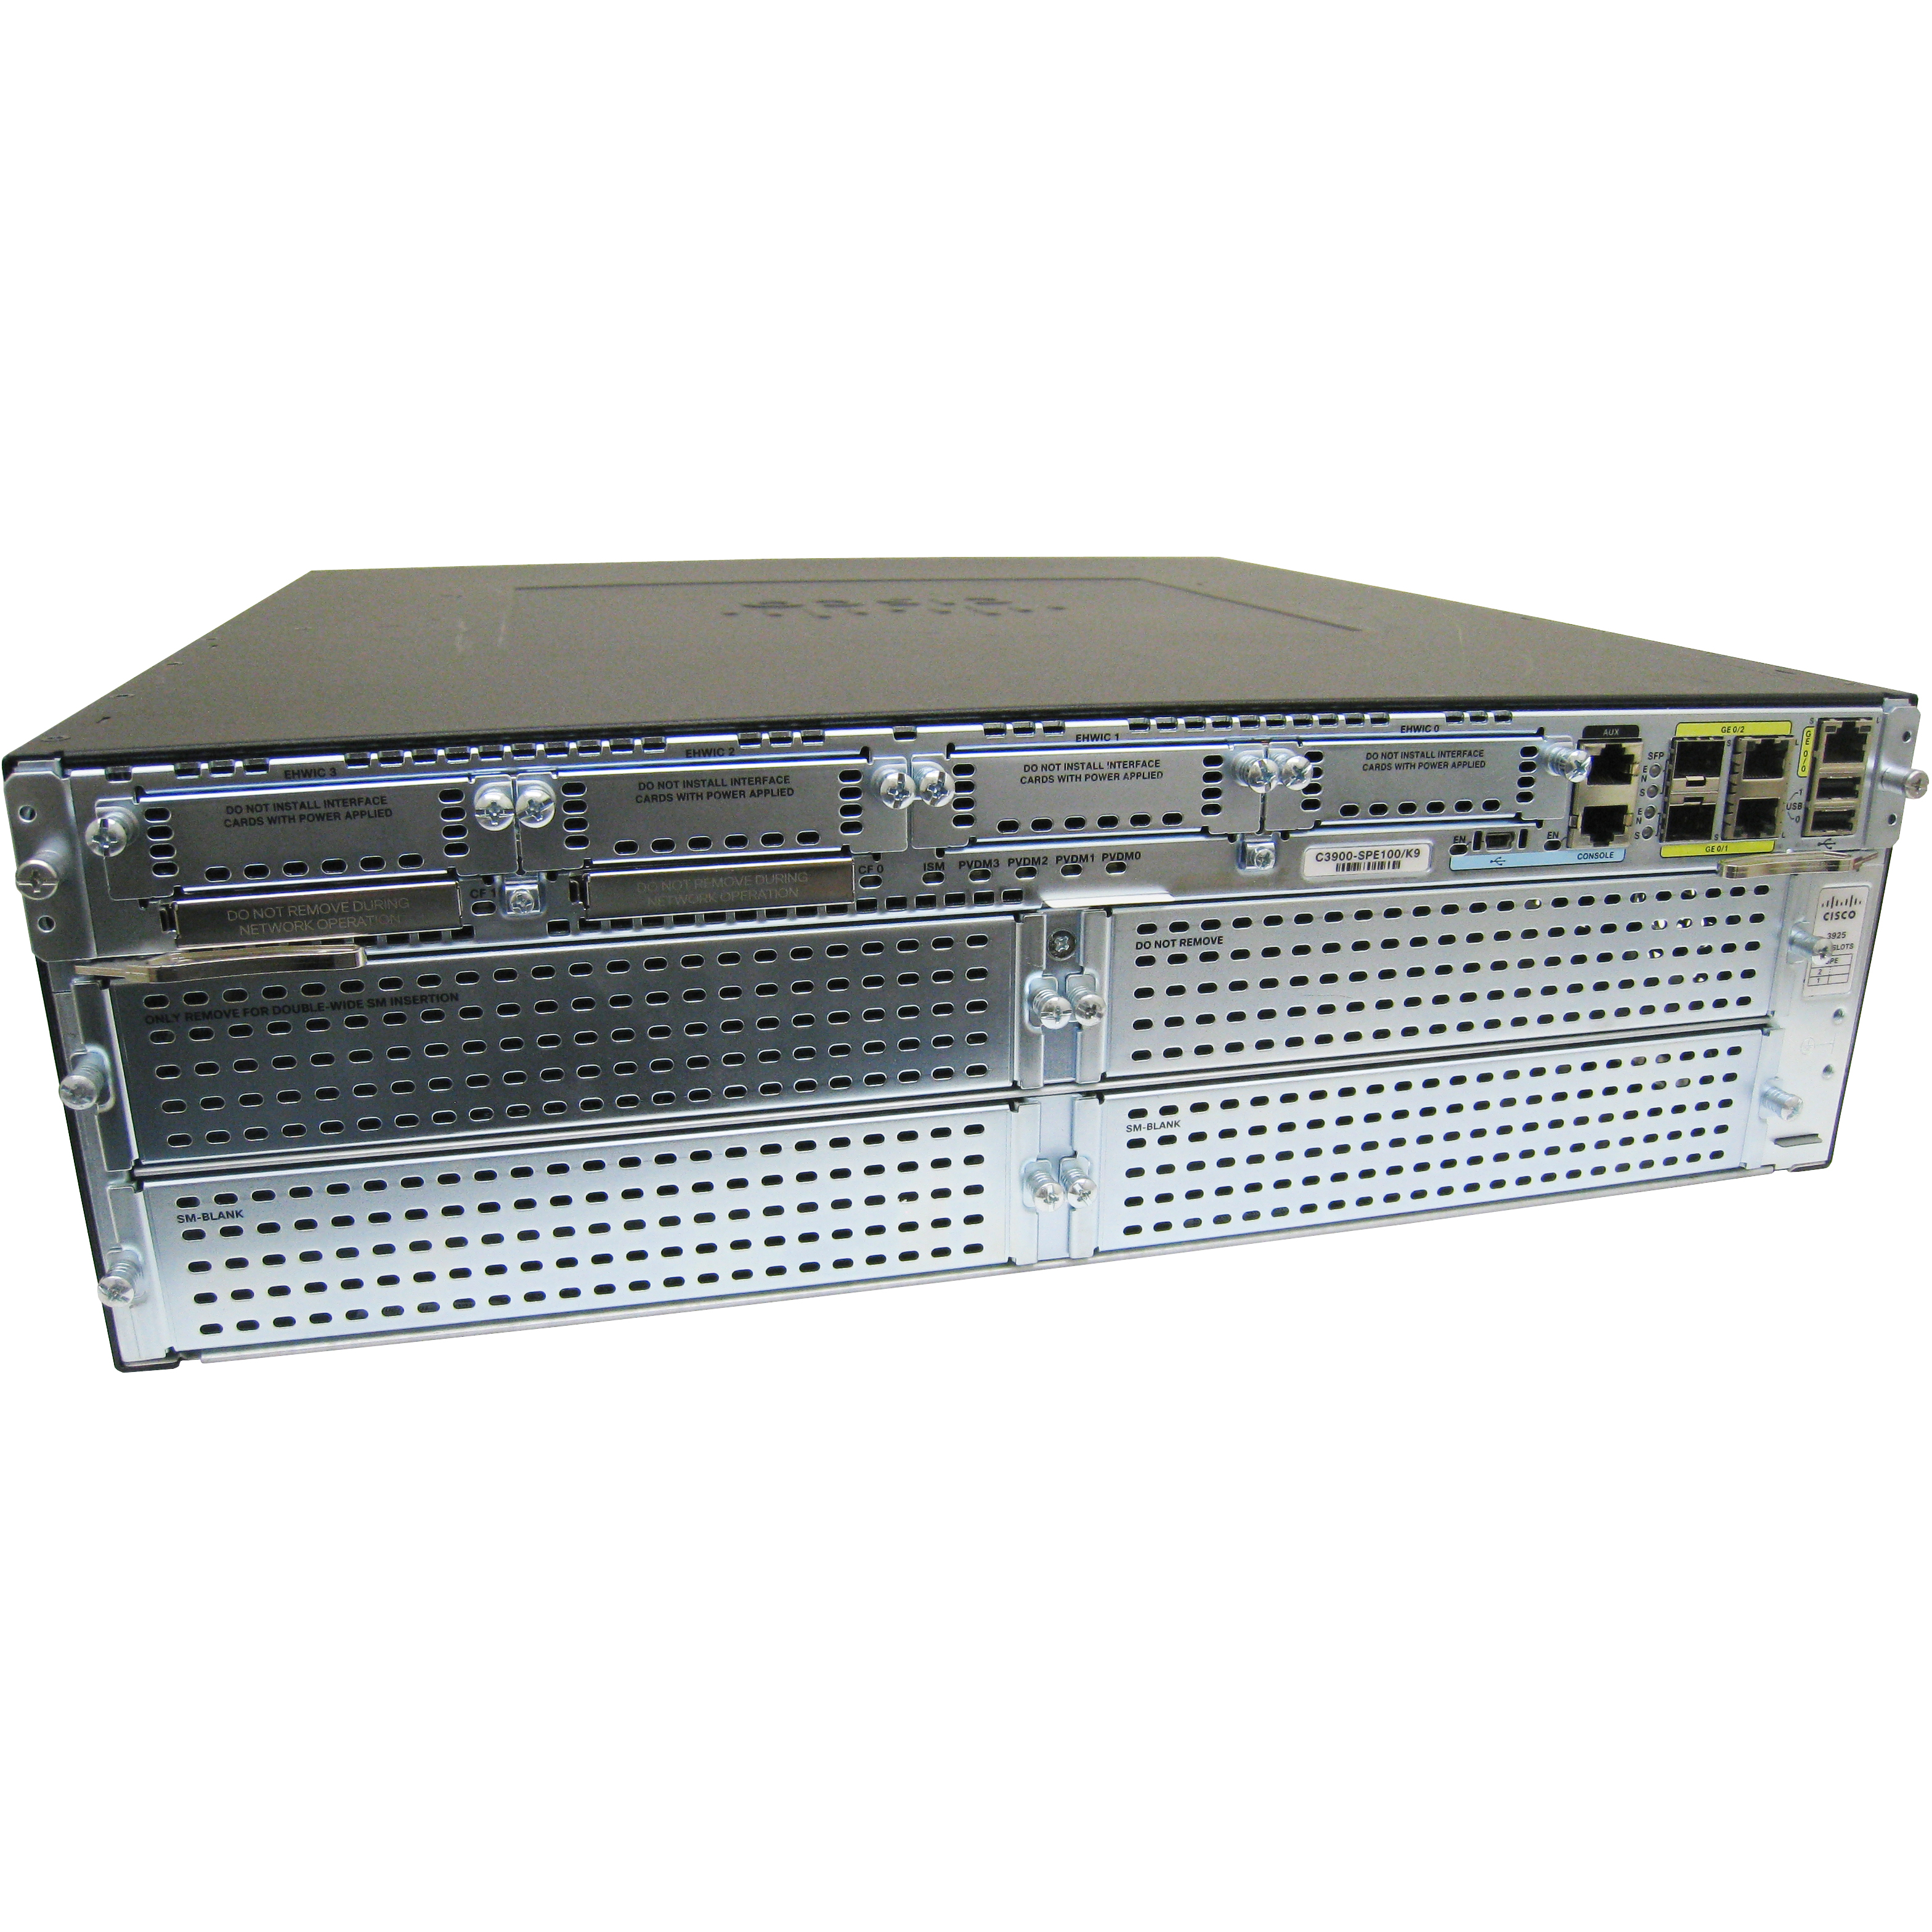 Cisco CISCO3925-V/K9